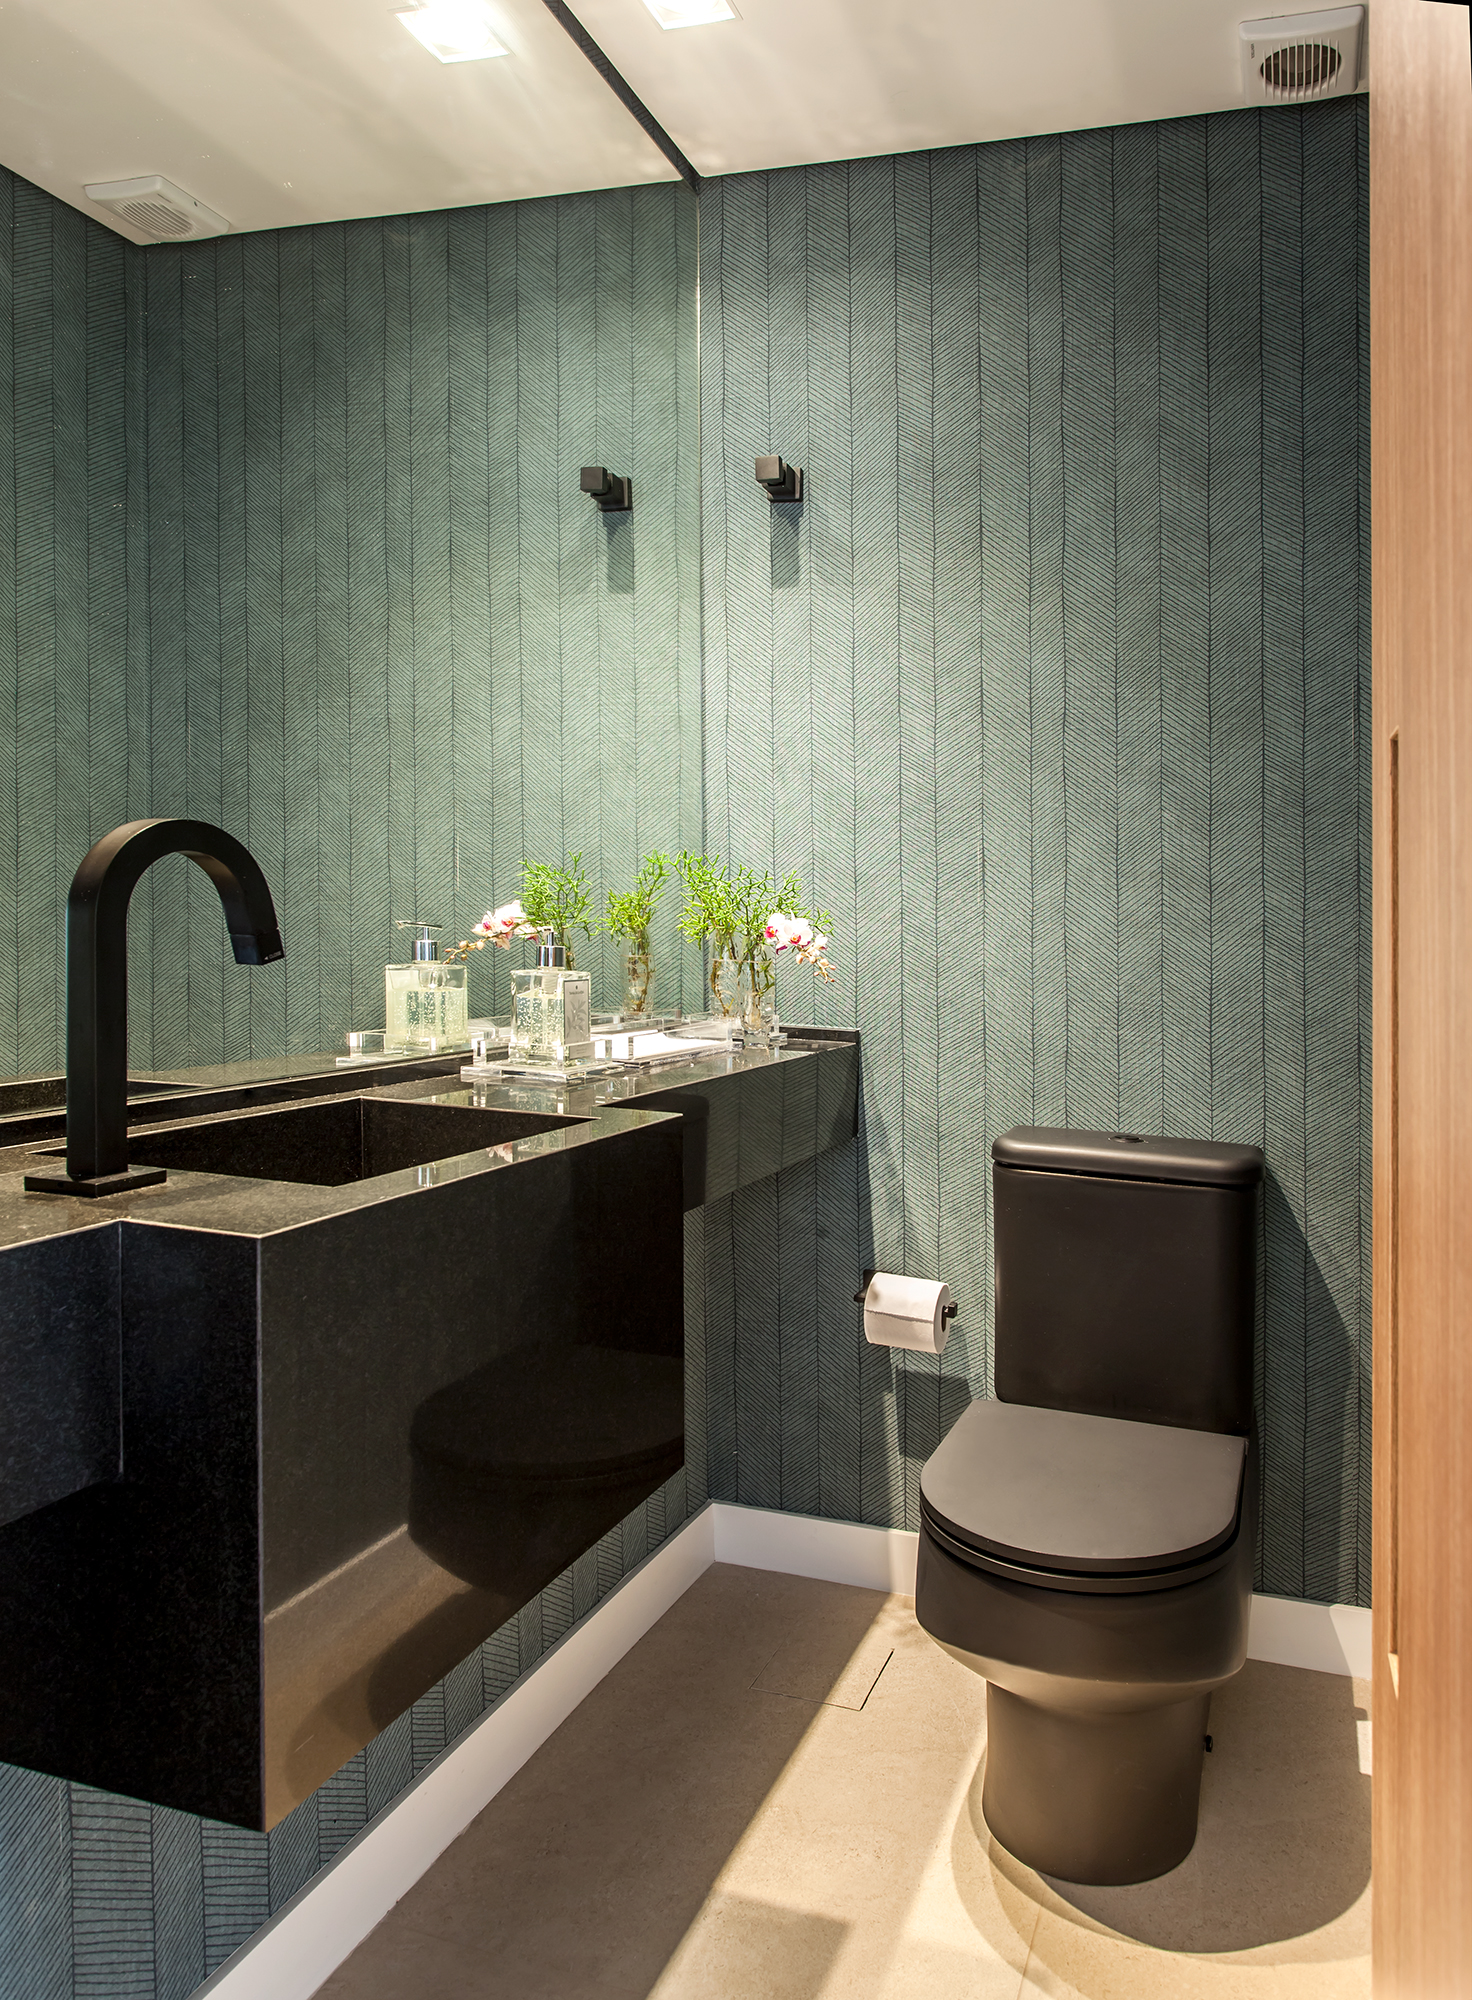 Paleta cores alegres tons terrosos décor apê 230 m2 Korman Arquitetos decoração banheiro espelho verde torneira